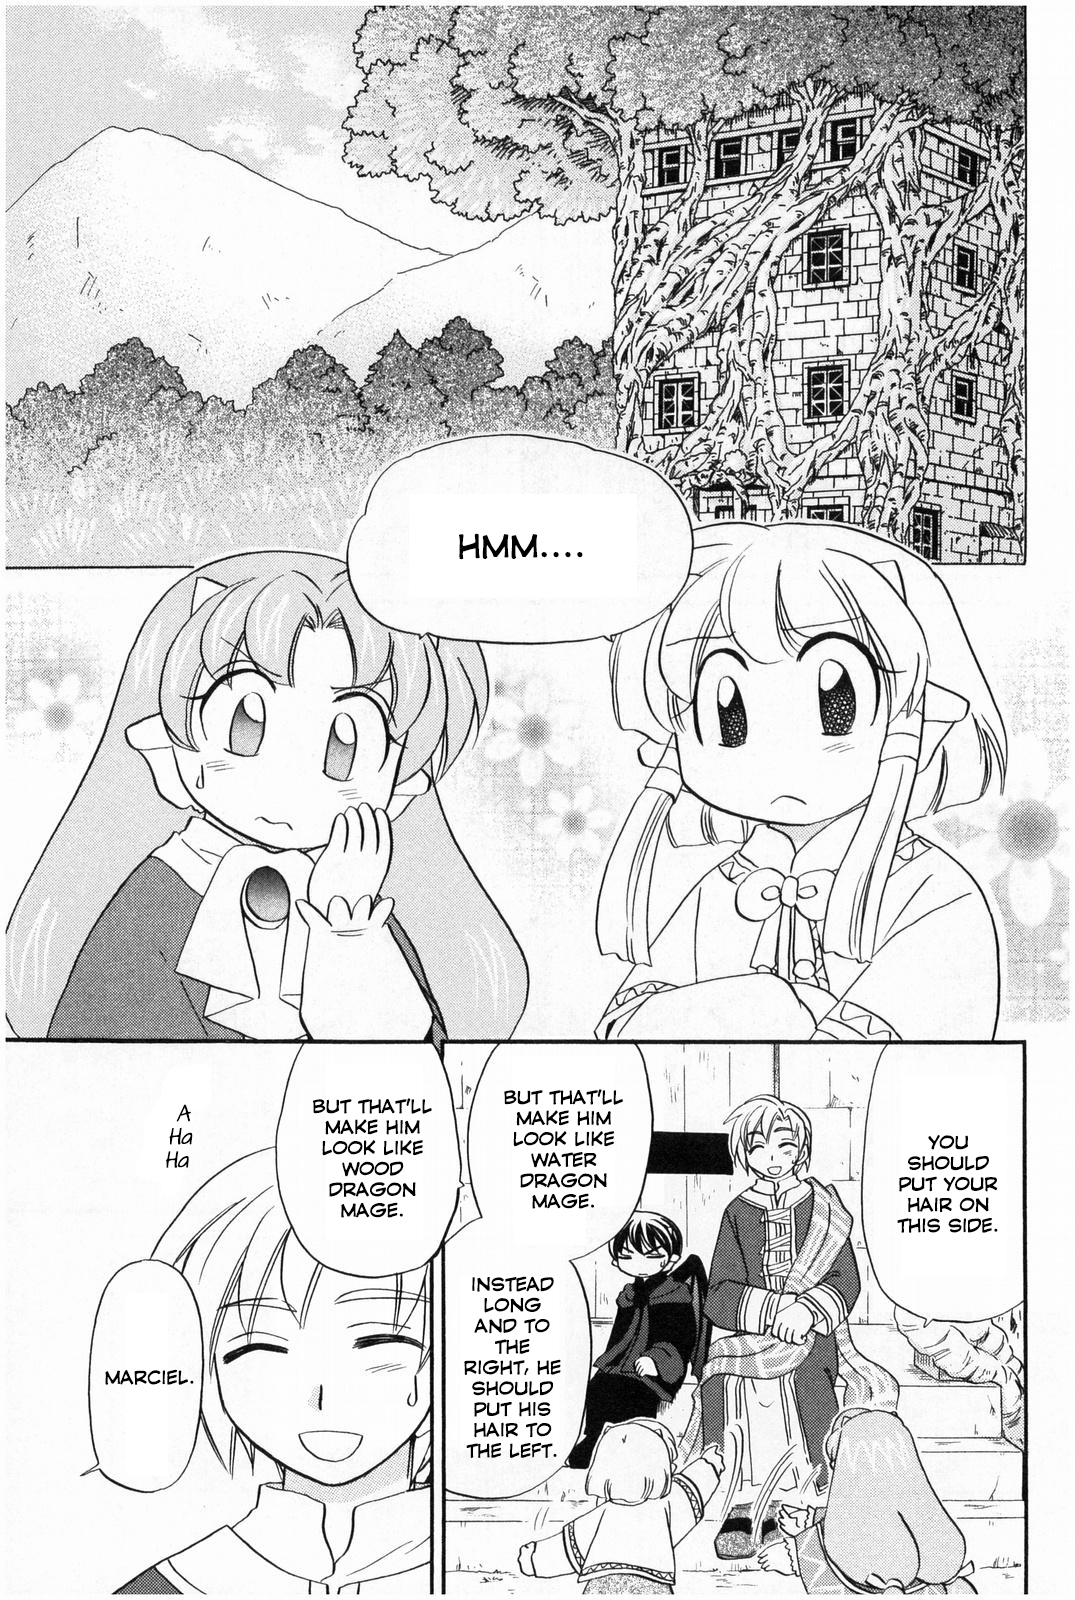 Corseltel no Ryuujitsushi Koryuu Monogatari Vol. 2 Ch. 13 Dragon Mage Siblings (First Part)